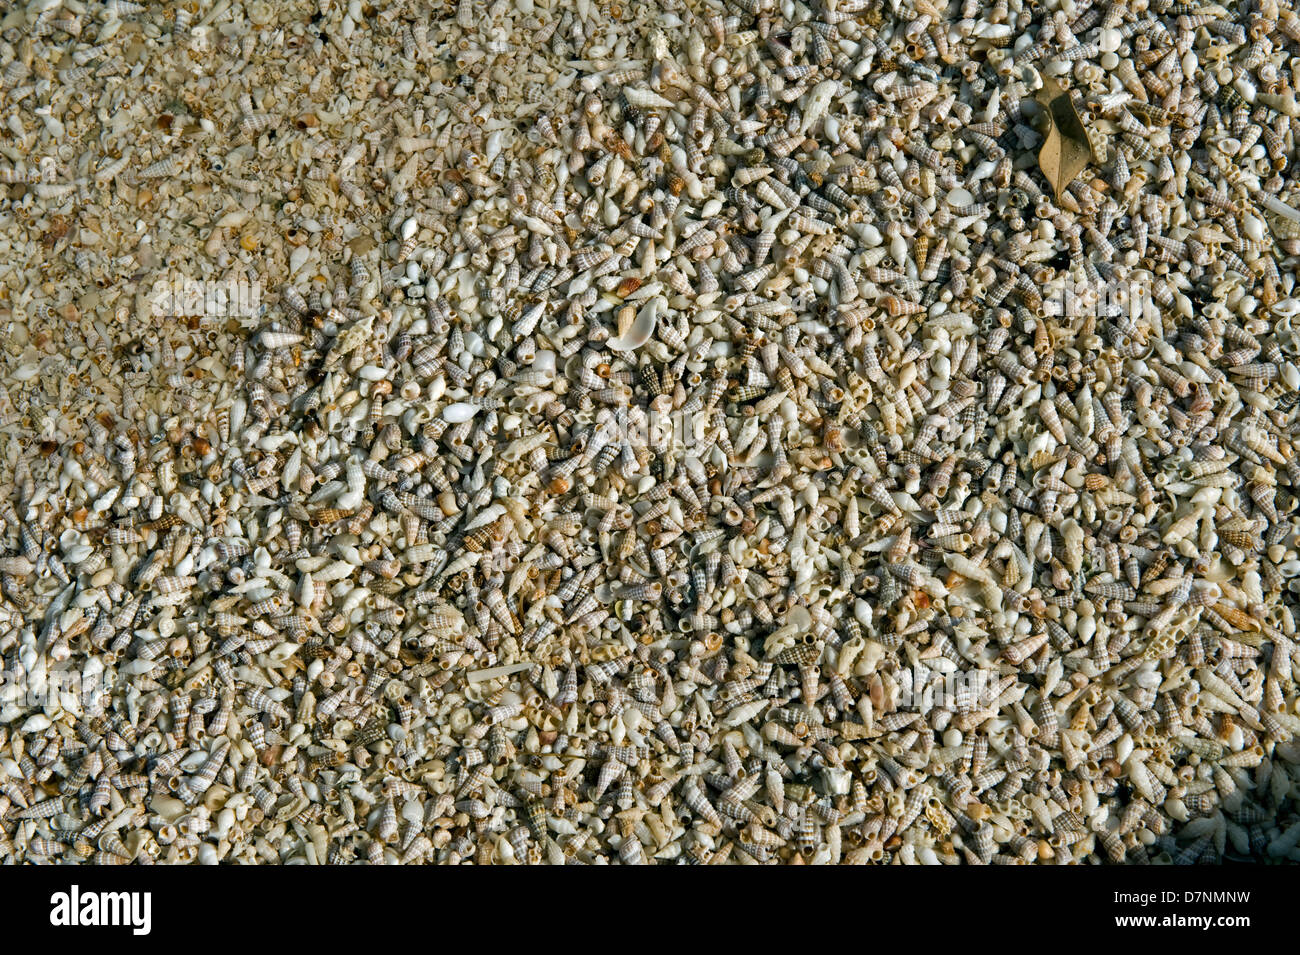 Playa con un mayor número de pequeñas conchas de mar, Abu Dhabi, Emiratos Arabes Unidos Foto de stock